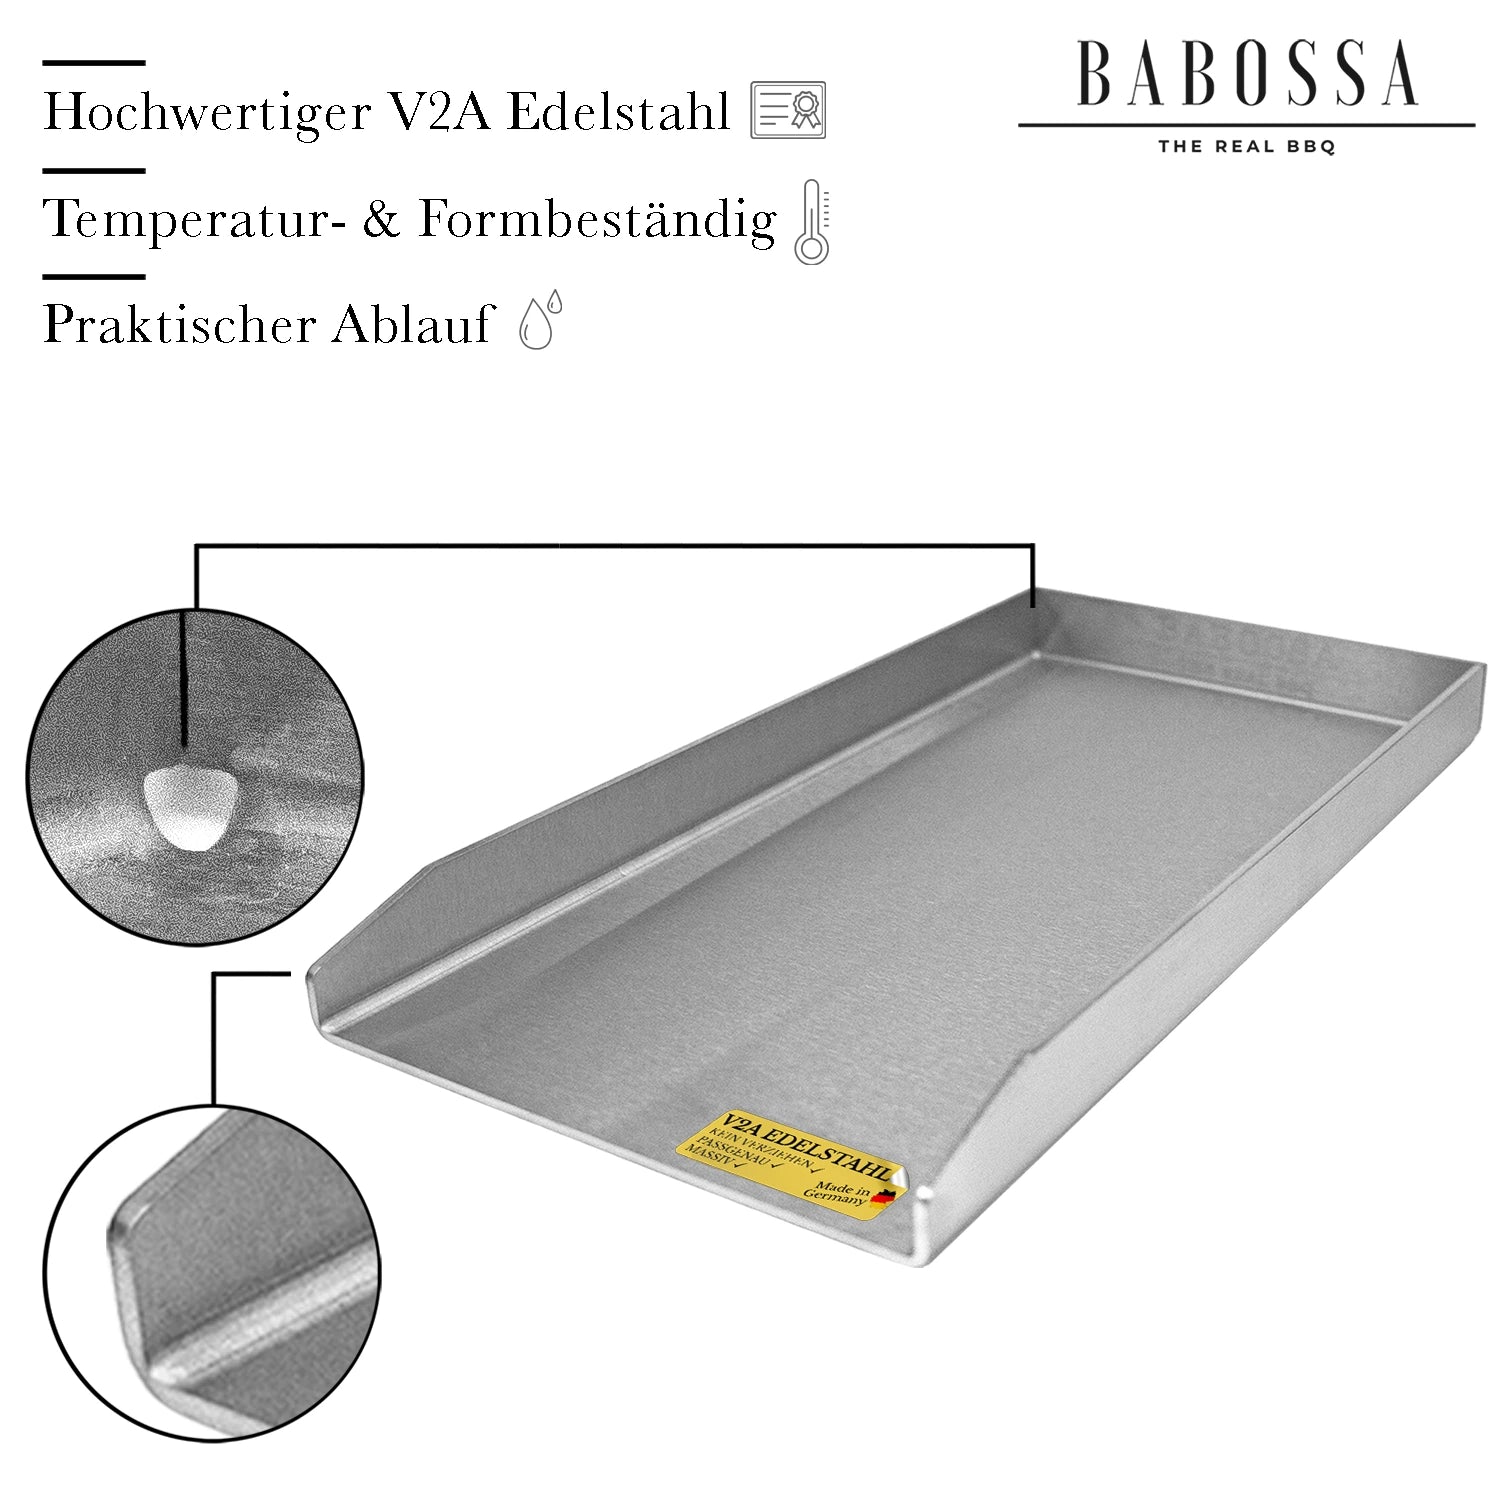 Plancha | Grillplatte | V2A Edelstahl | Rösle Vario Edition | 23,5x44,5cm